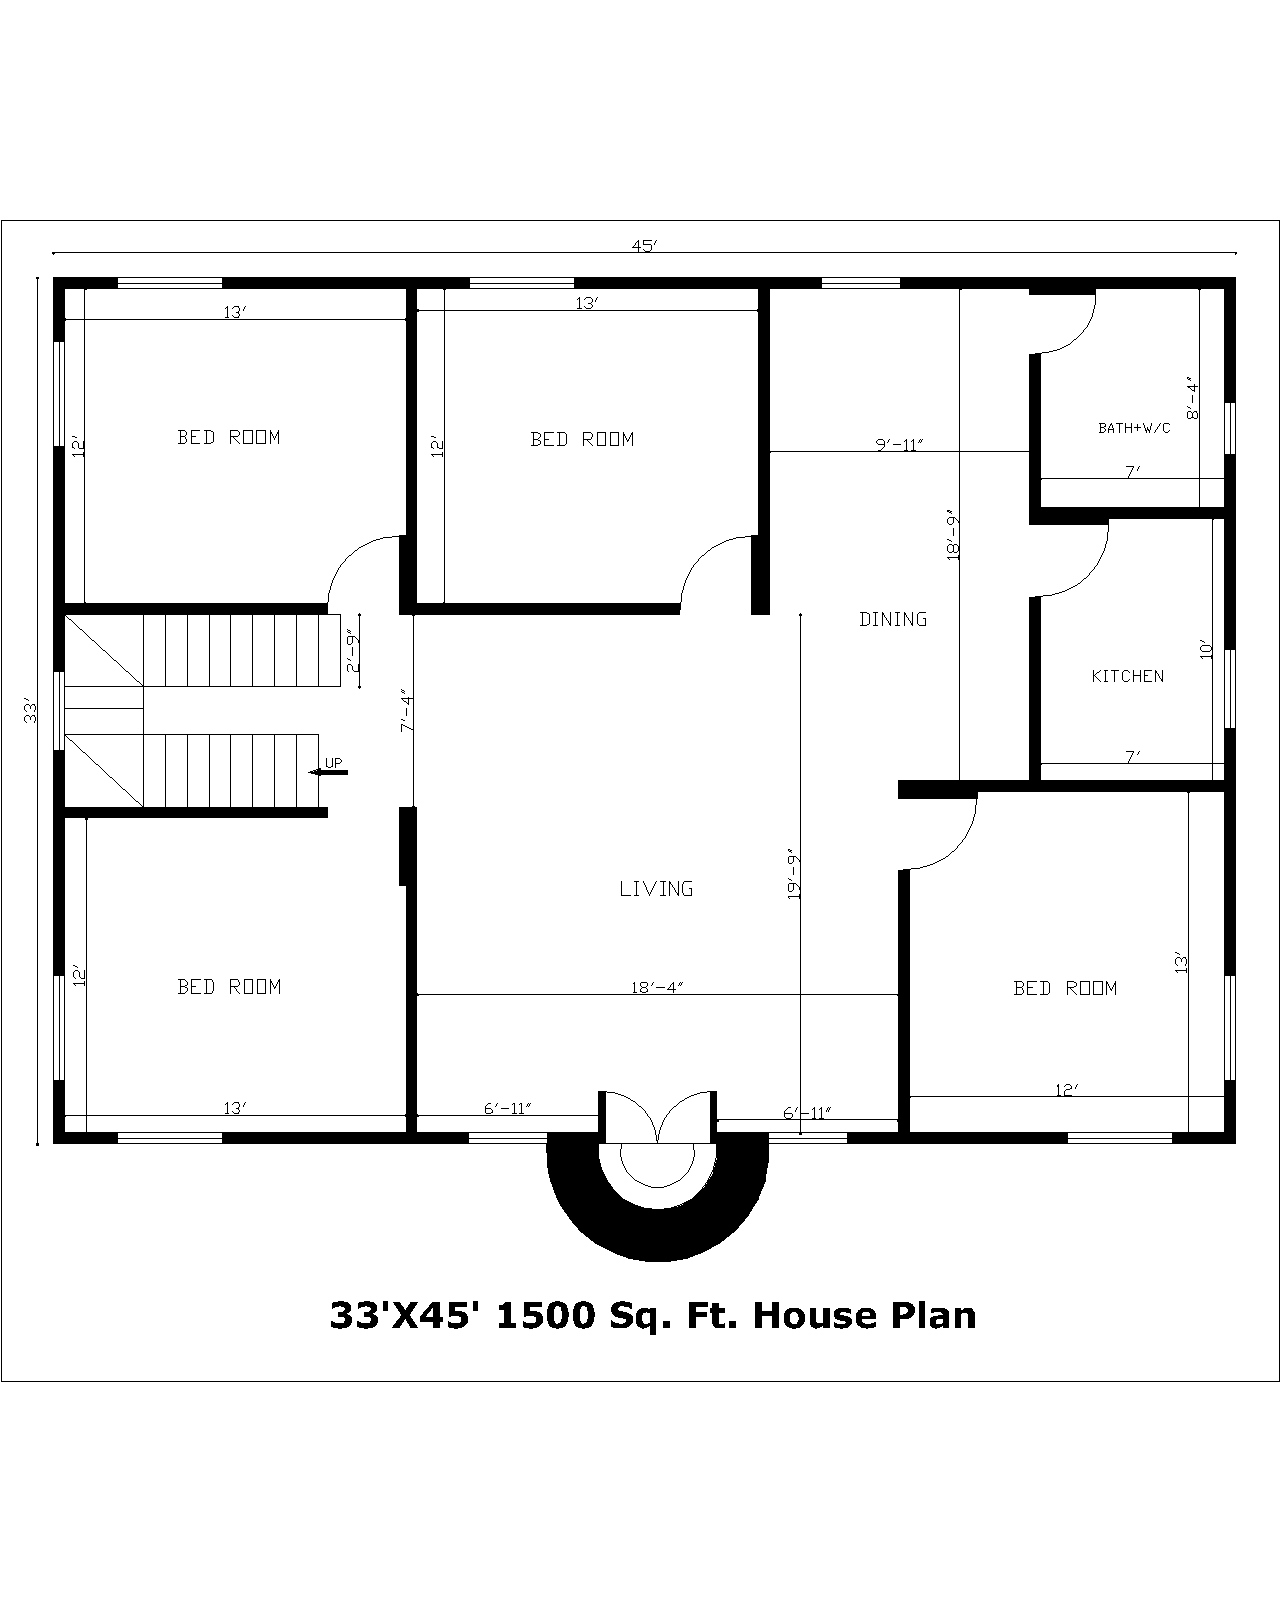 33'X45' 1500 Sq. Ft. House Plan | 33'X45' 1500 Sq. Ft. Gharka Naksha